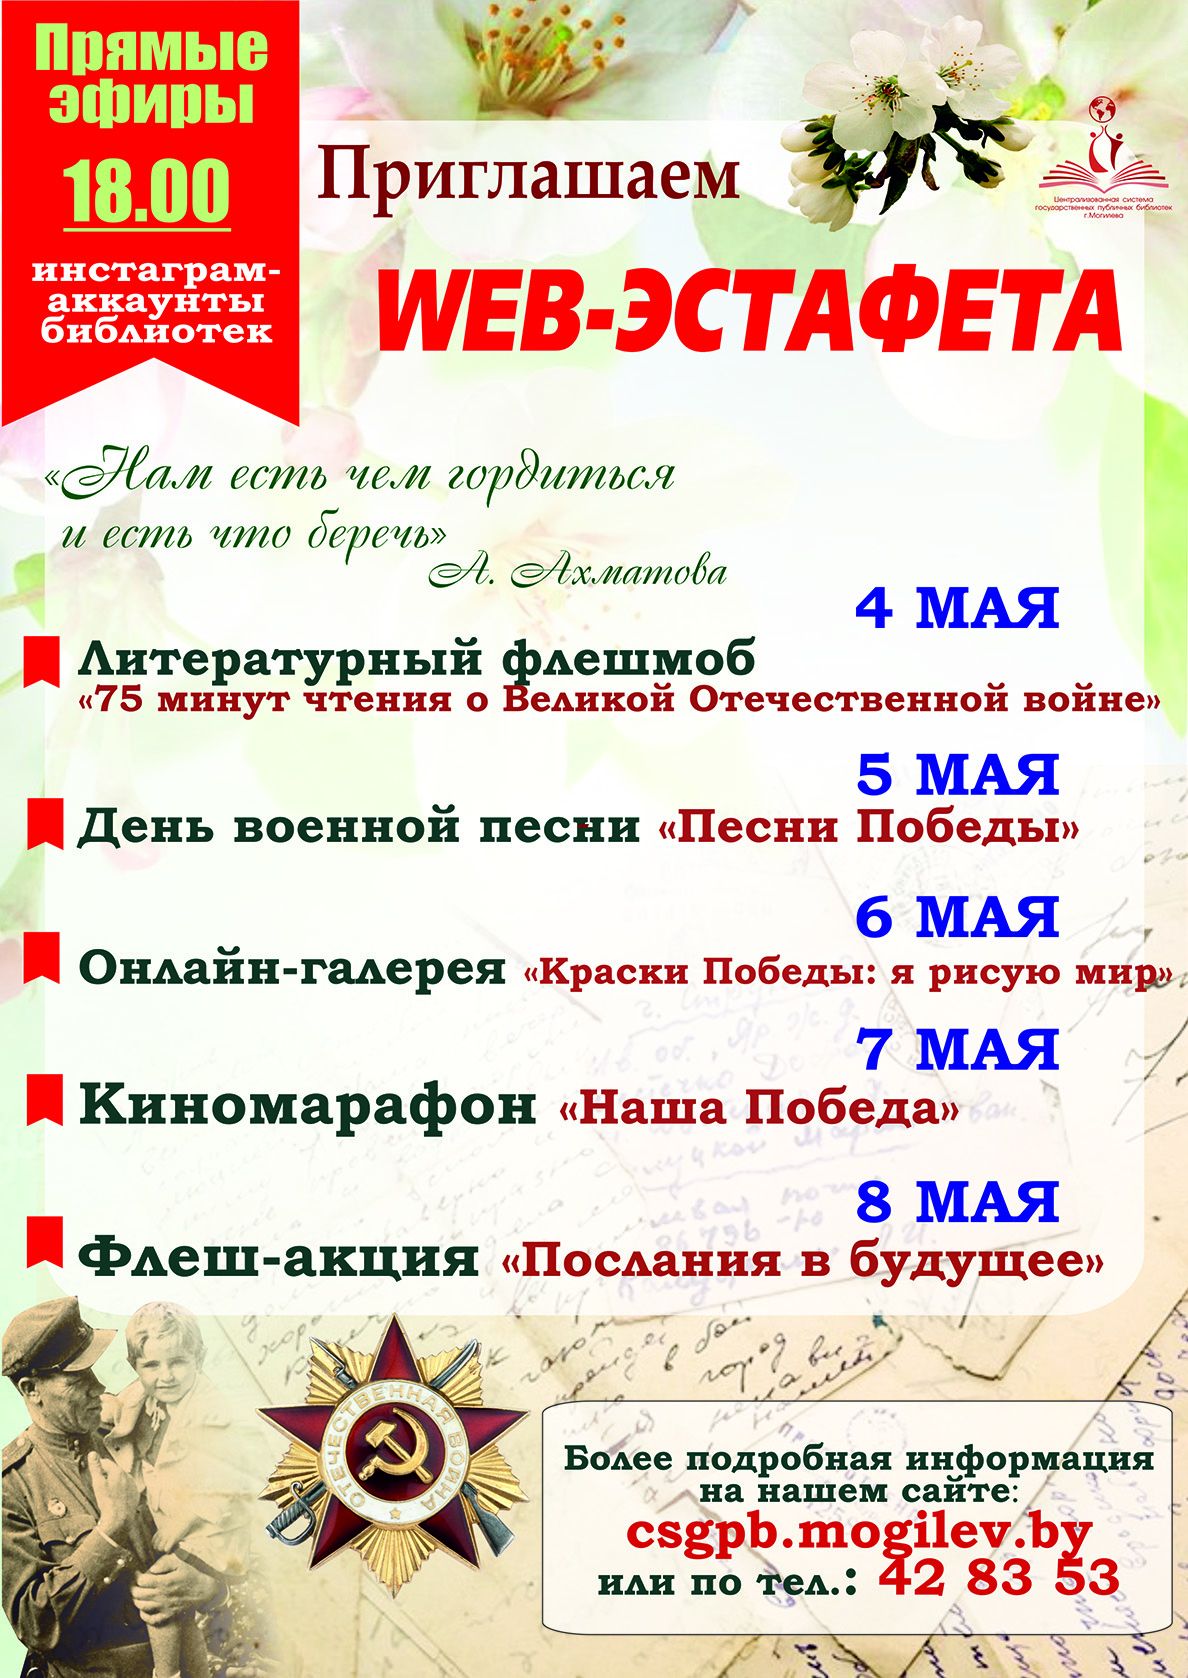 Могилевчан приглашают принять участие в Web-эстафете, посвященной 75-летию Победы